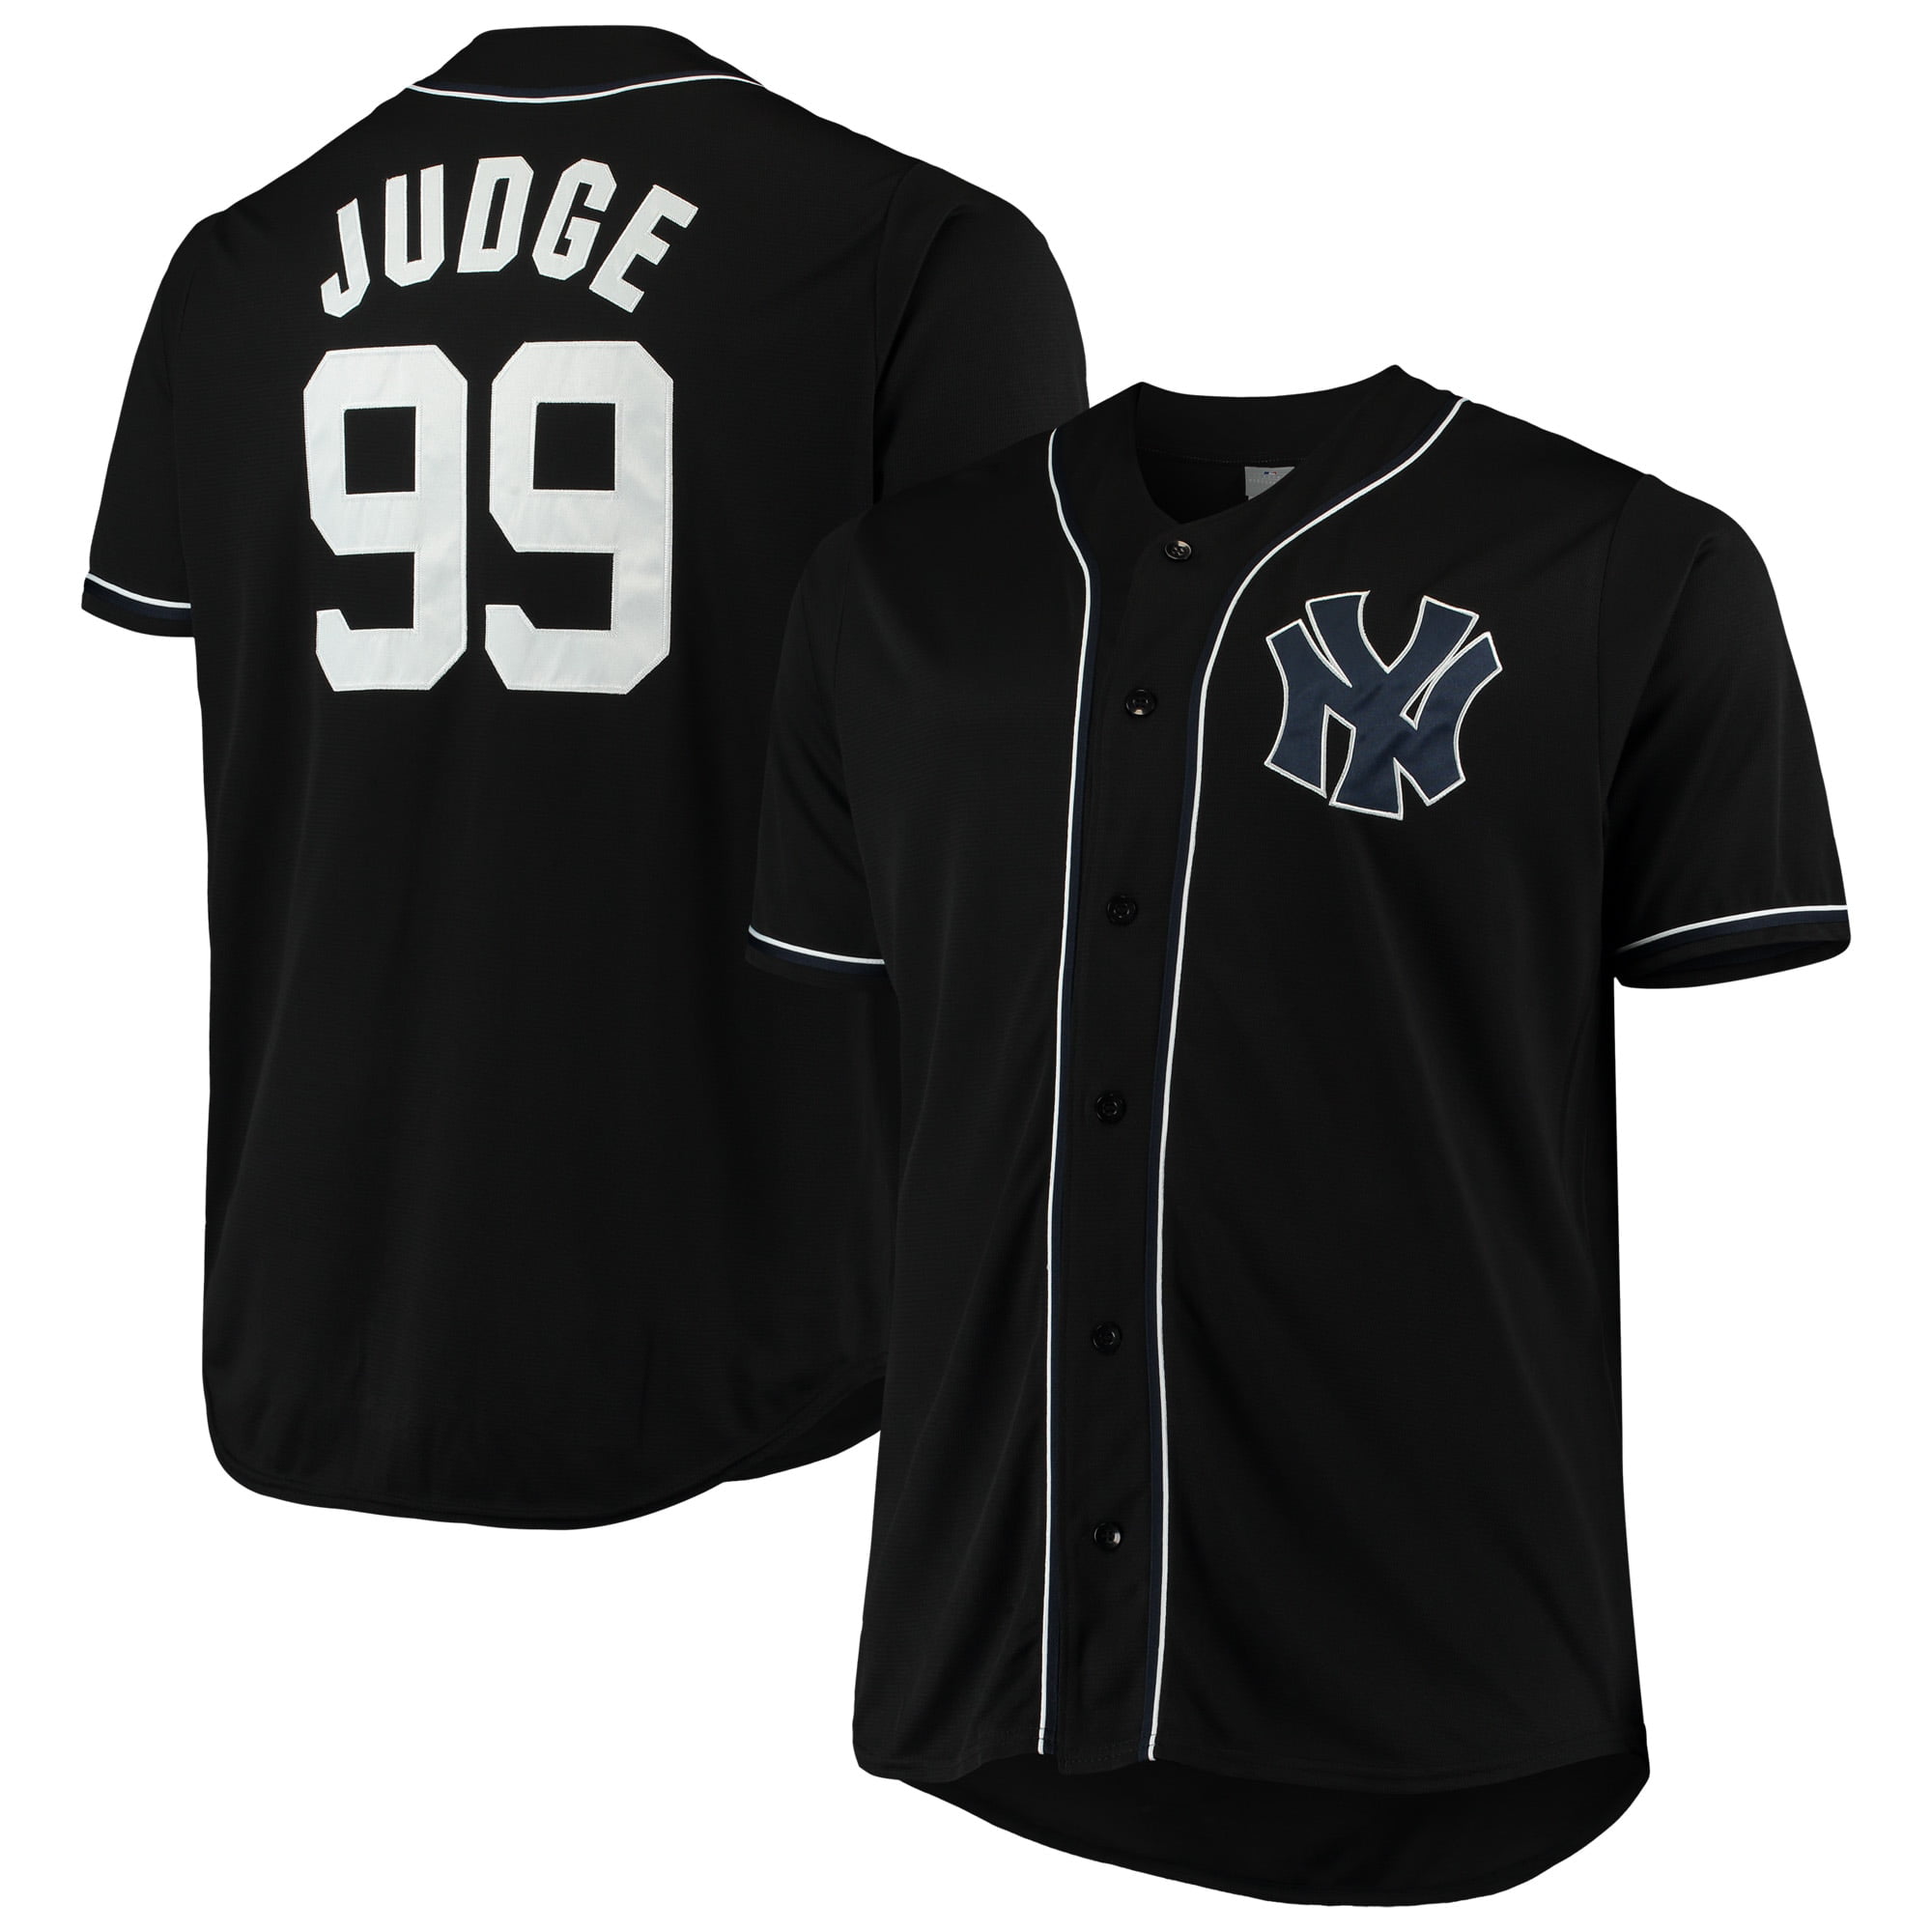 Aaron Judge New York Yankees Big \u0026 Tall 